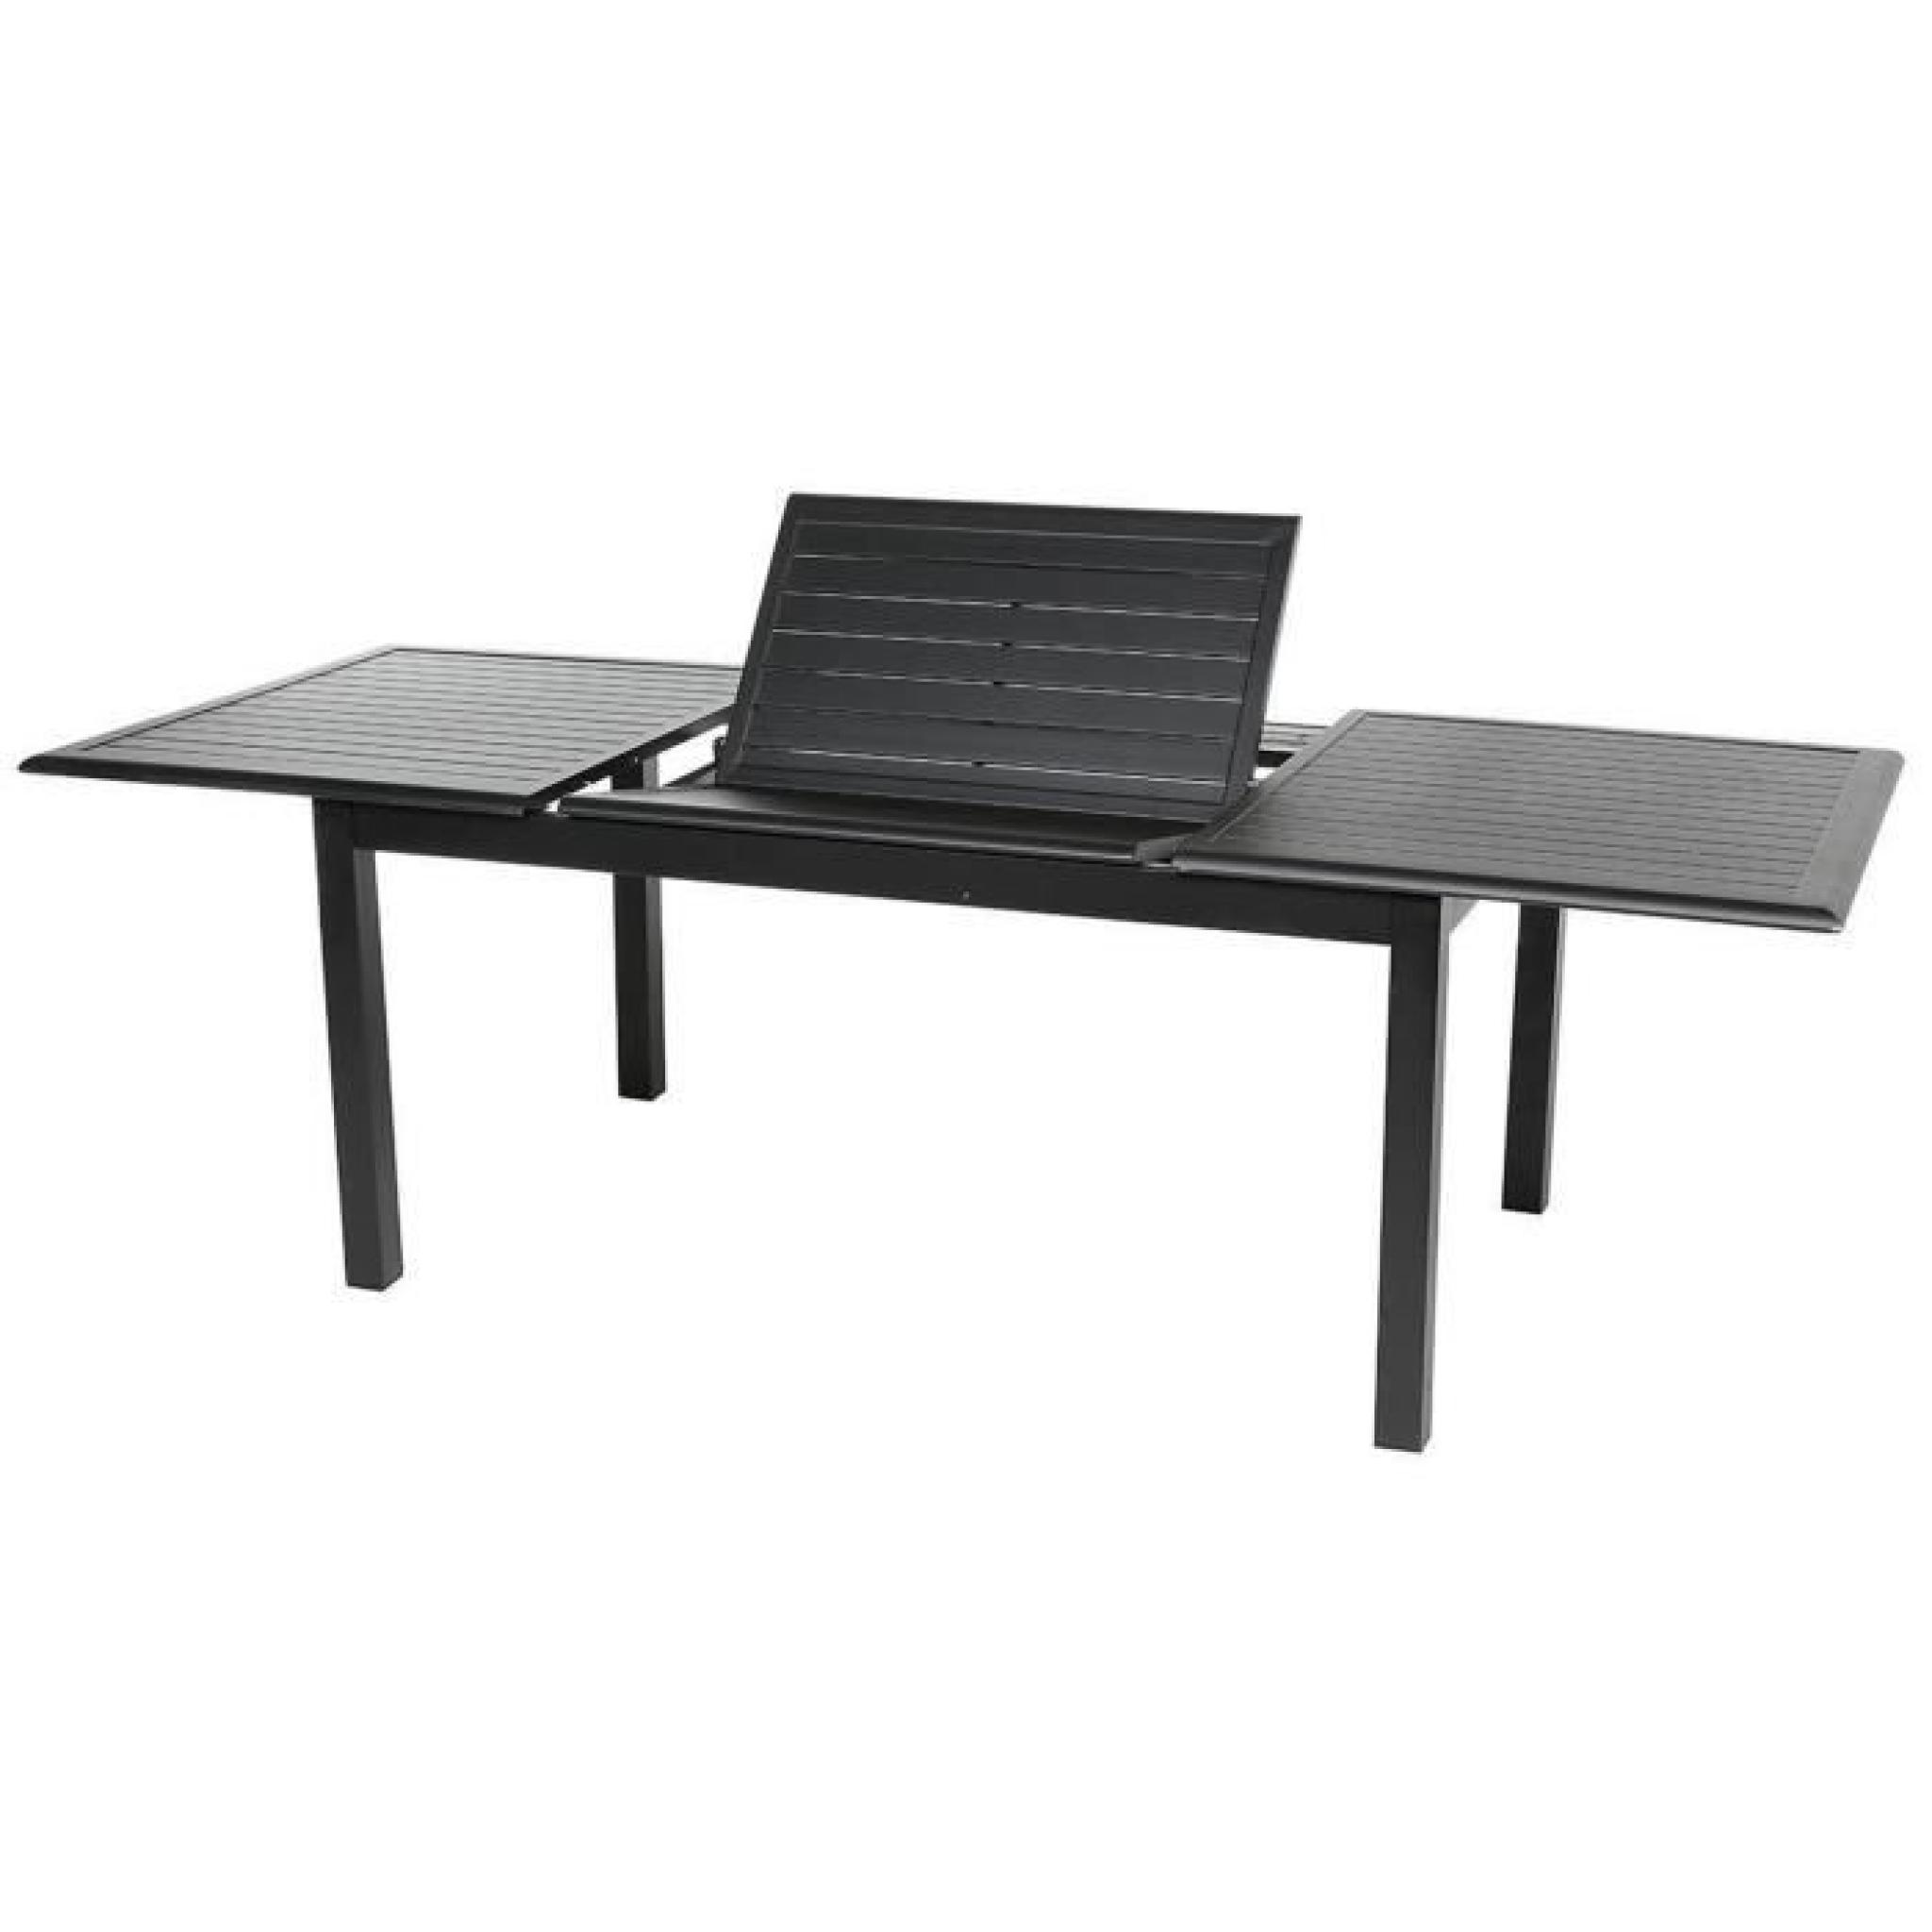 Table extensible en aluminium de couleur noire - Dim : L 160/240 x P 100 x H 75 cm   pas cher